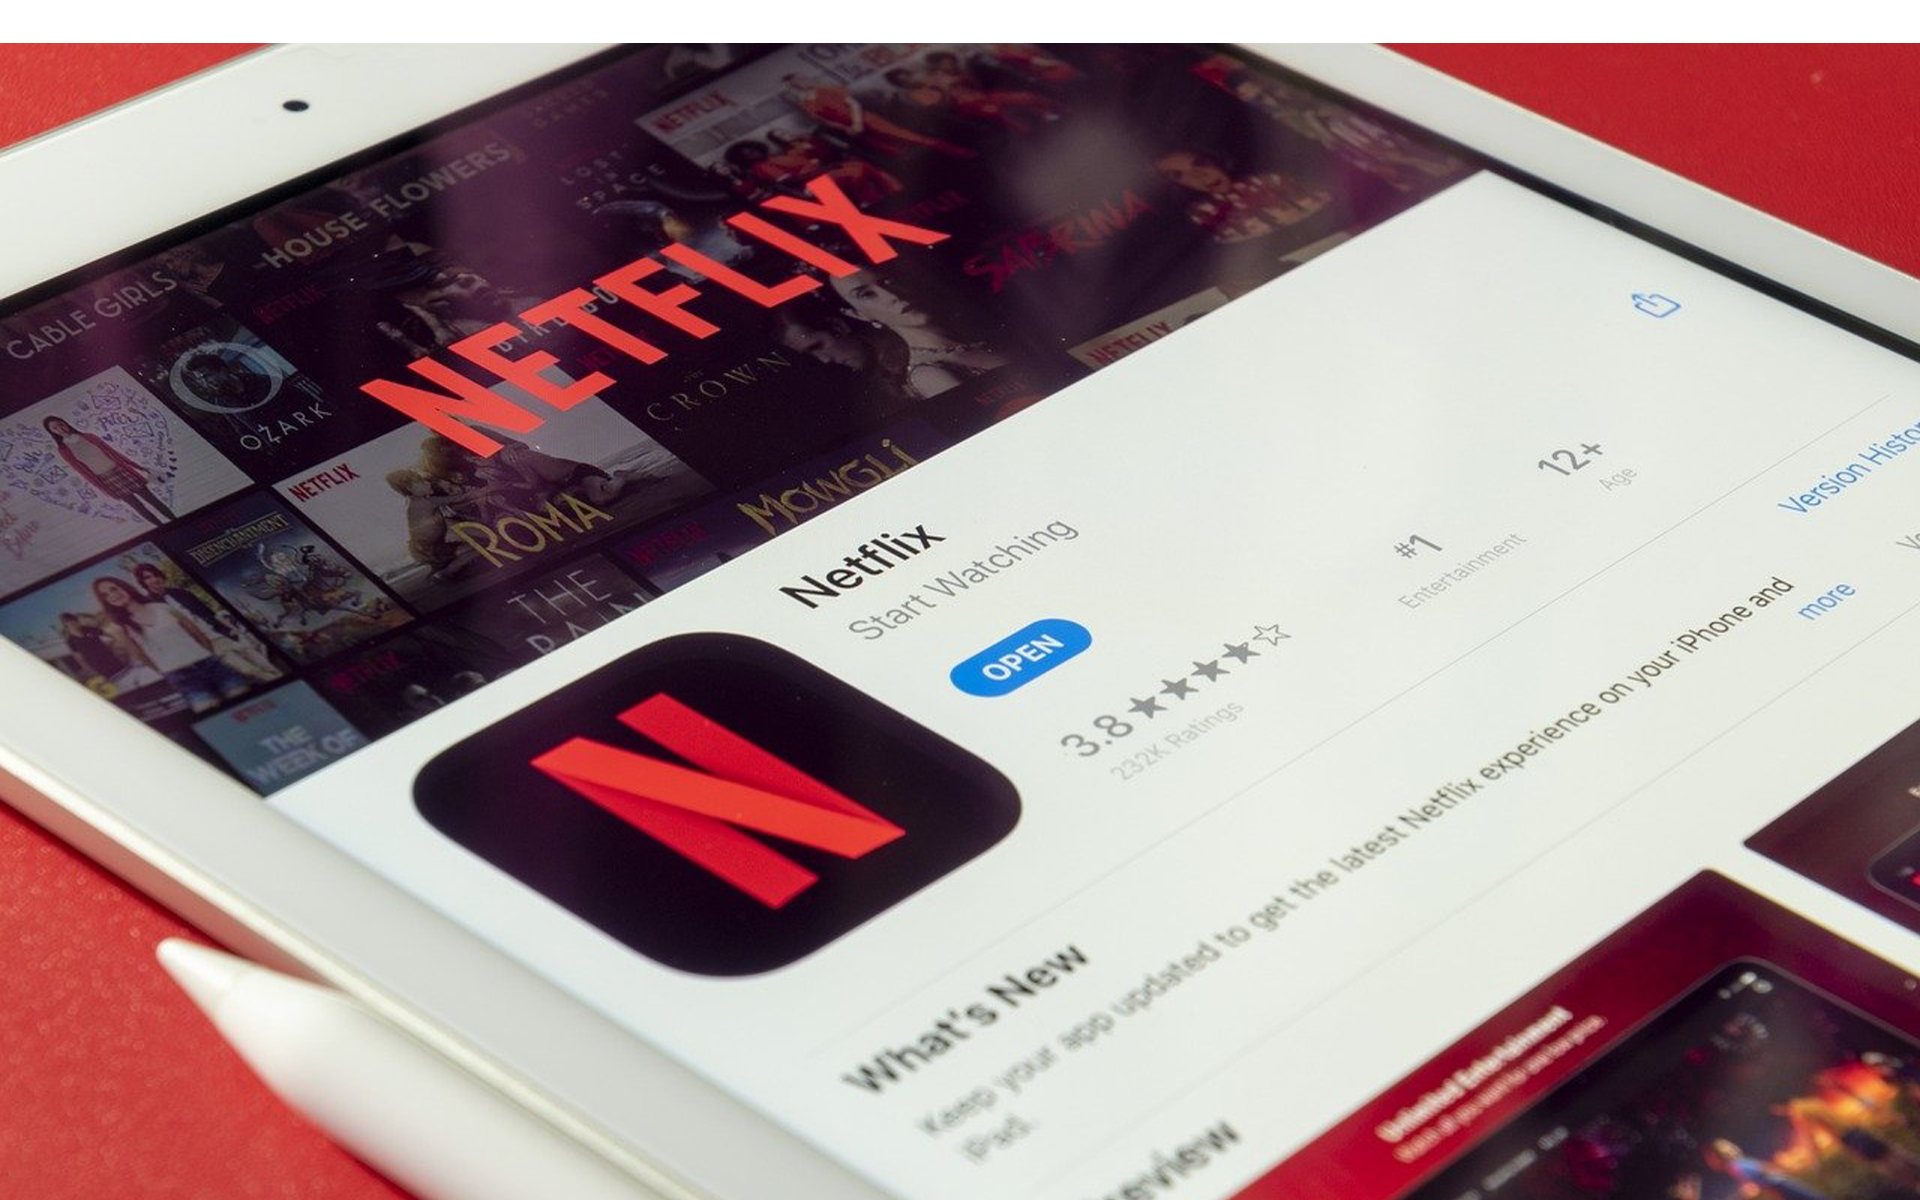 Chào mừng bạn đến với thế giới trải nghiệm phim tuyệt vời của Netflix trên máy tính bảng! Với máy tính bảng hỗ trợ HD và HDR cho Netflix, bạn sẽ được thưởng thức những bộ phim và chương trình yêu thích của mình với độ nét cao và màu sắc tuyệt đẹp. Hãy xem ngay!